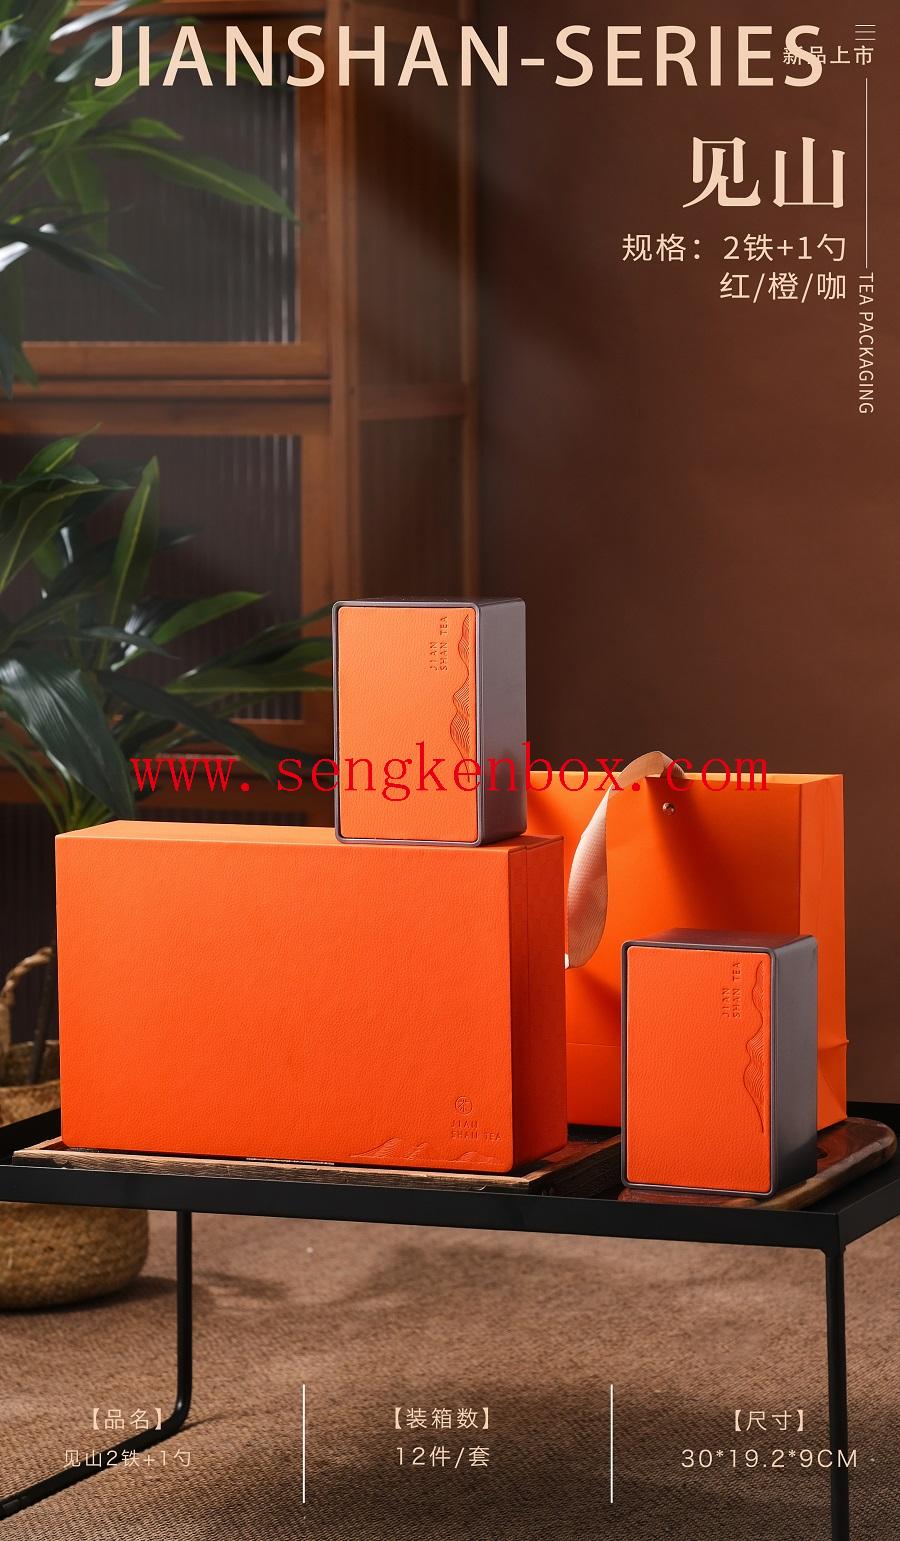 Schachtel für Tee, individuelle Premium-Teeschachtel mit Markenlogo